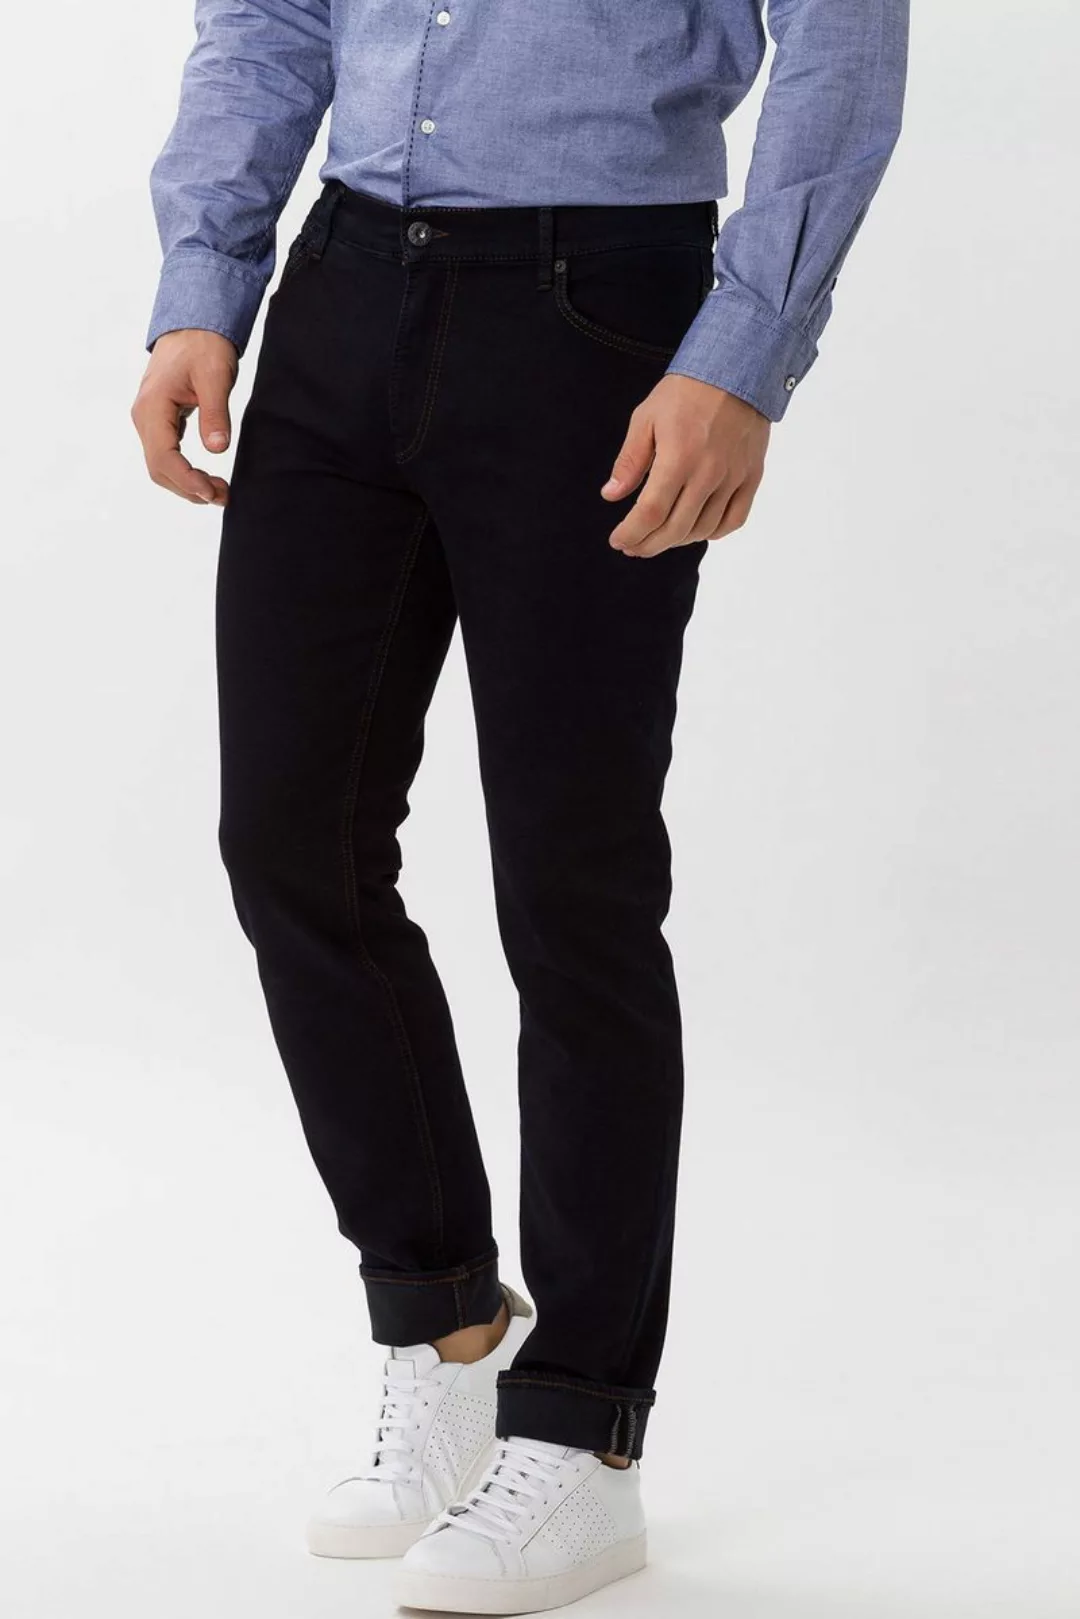 Brax Chuck Jeans Dunkelblau - Größe W 36 - L 34 günstig online kaufen